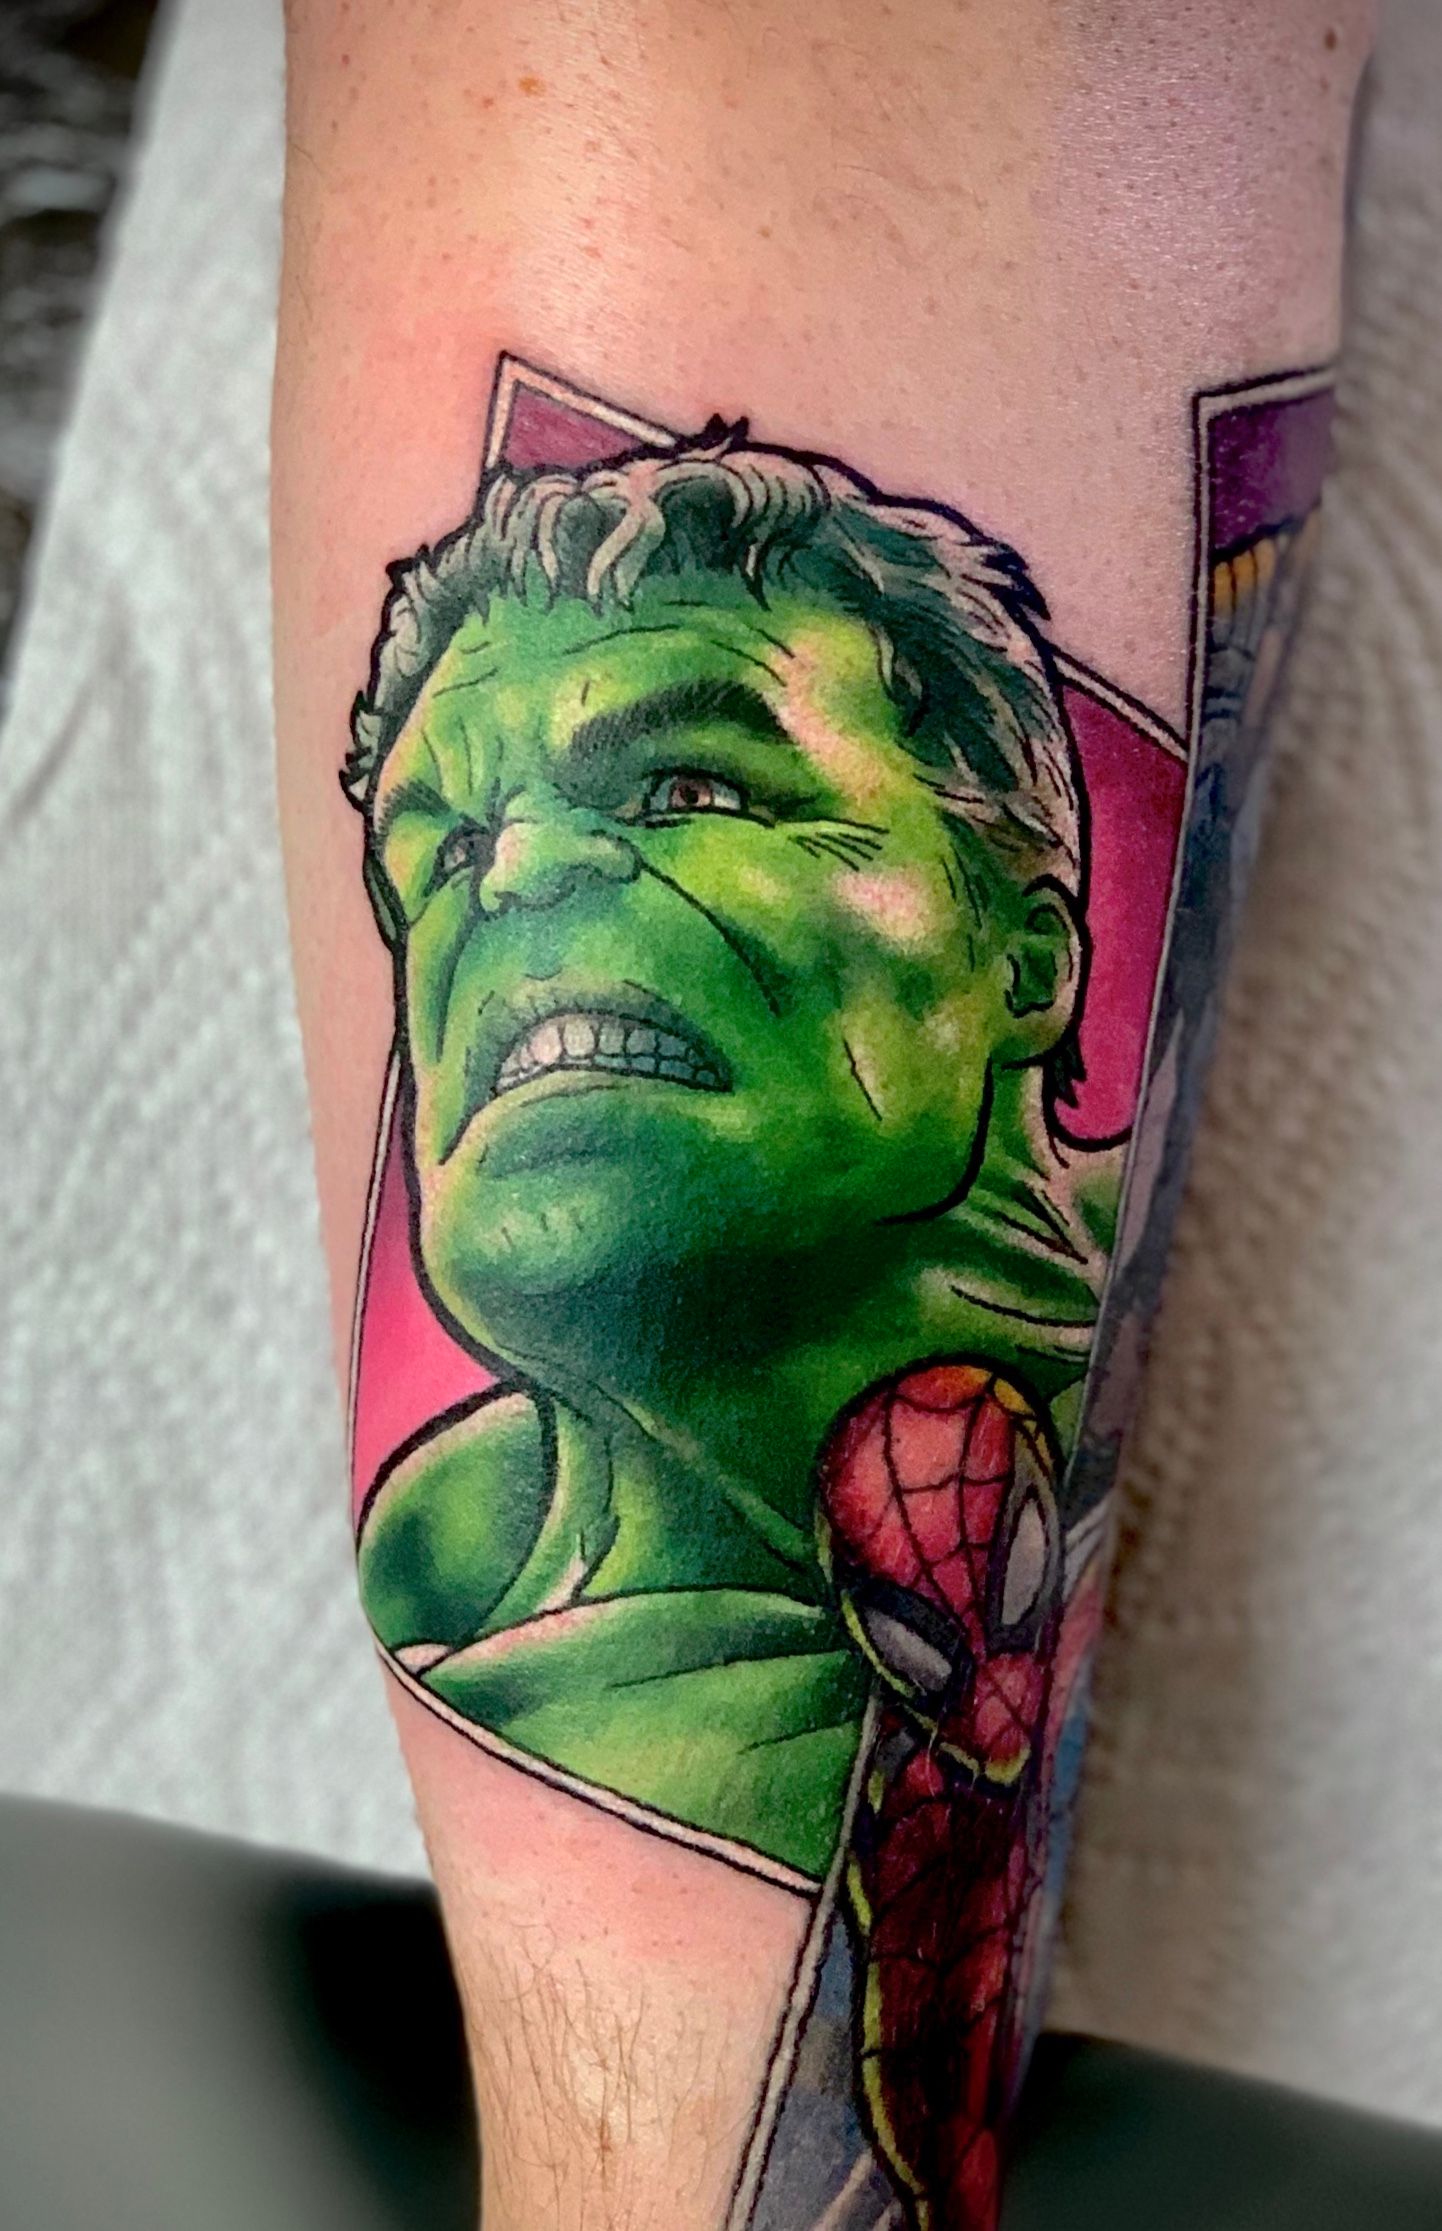 She-Hulk Snake Tattoo by PierreMateus on Newgrounds